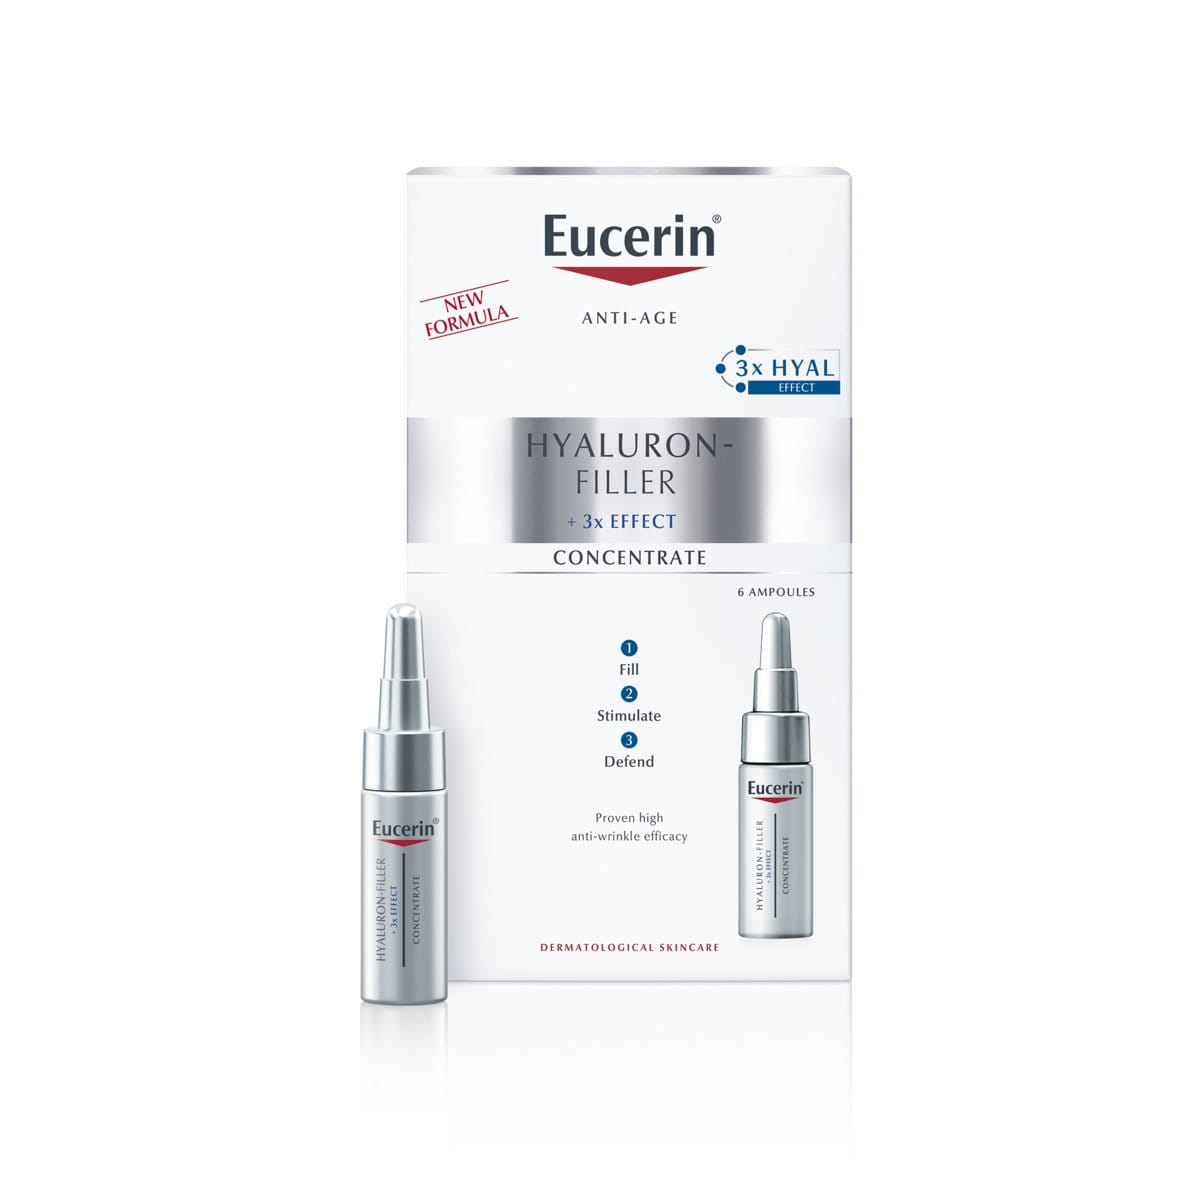 Eucerin Hyaluron-Filler koncentrat, 6 ampul po 5 ml